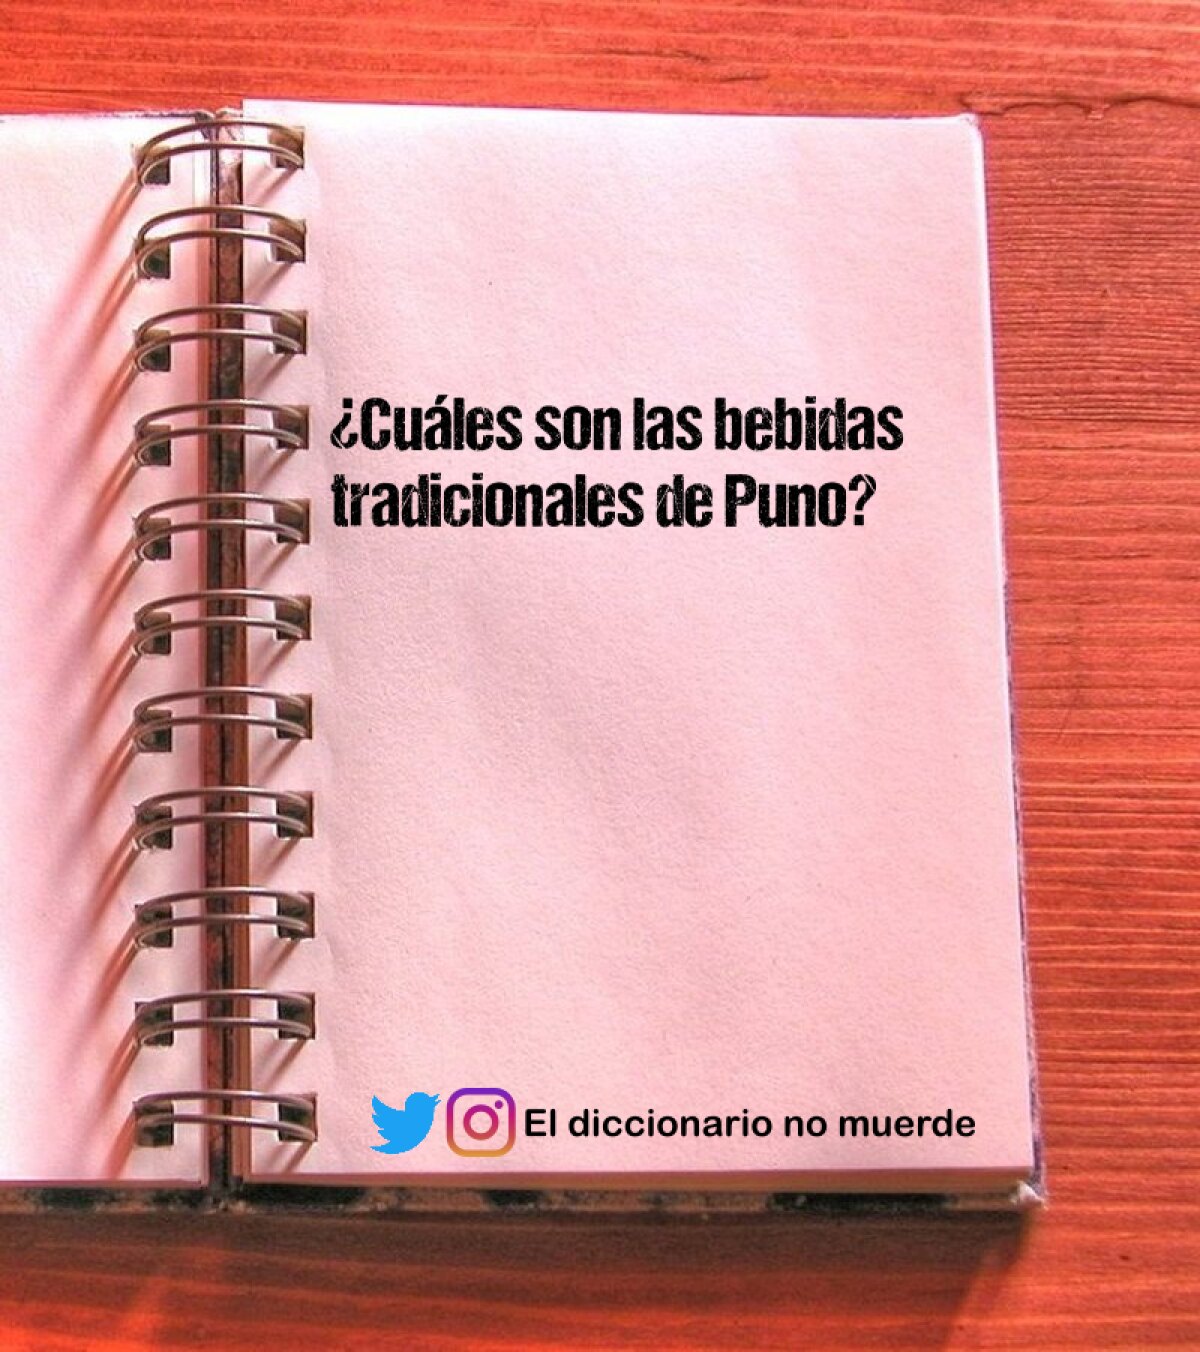 ¿Cuáles son las bebidas tradicionales de Puno?